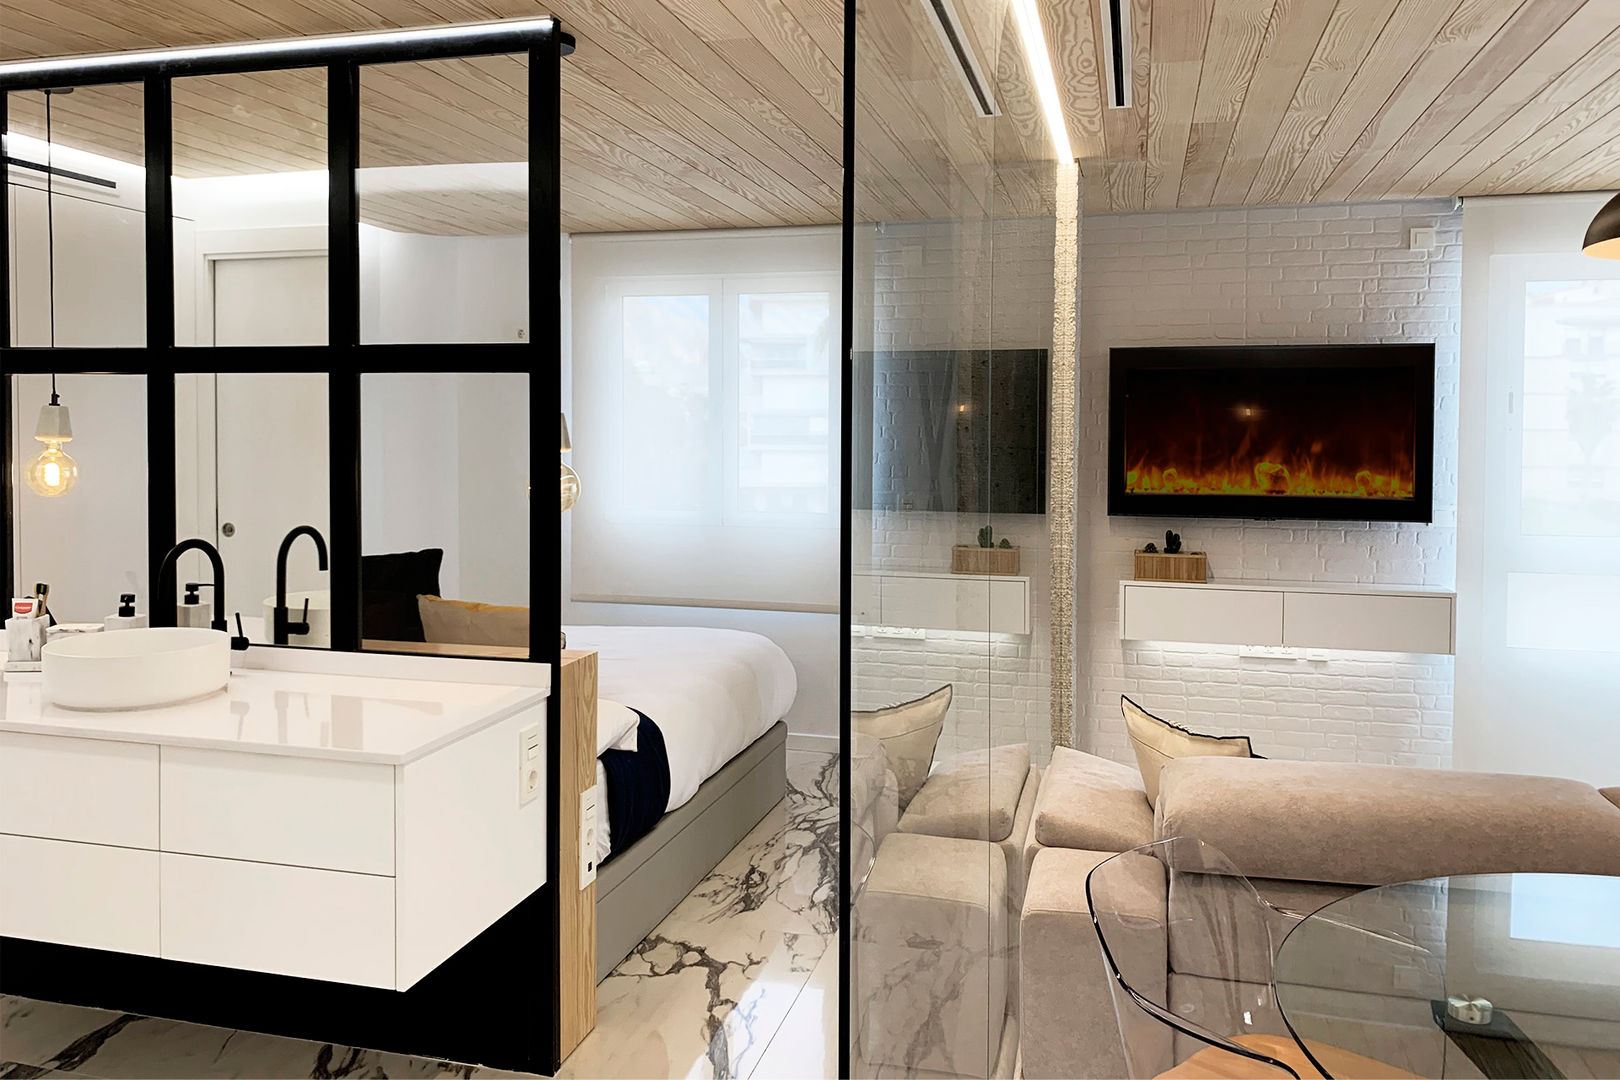 Baño DISENA studio Baños de estilo minimalista Edificio,Hundir,Grifo,Marco,Diseño de interiores,Madera,Comodidad,Piso,Suelo,Rectángulo